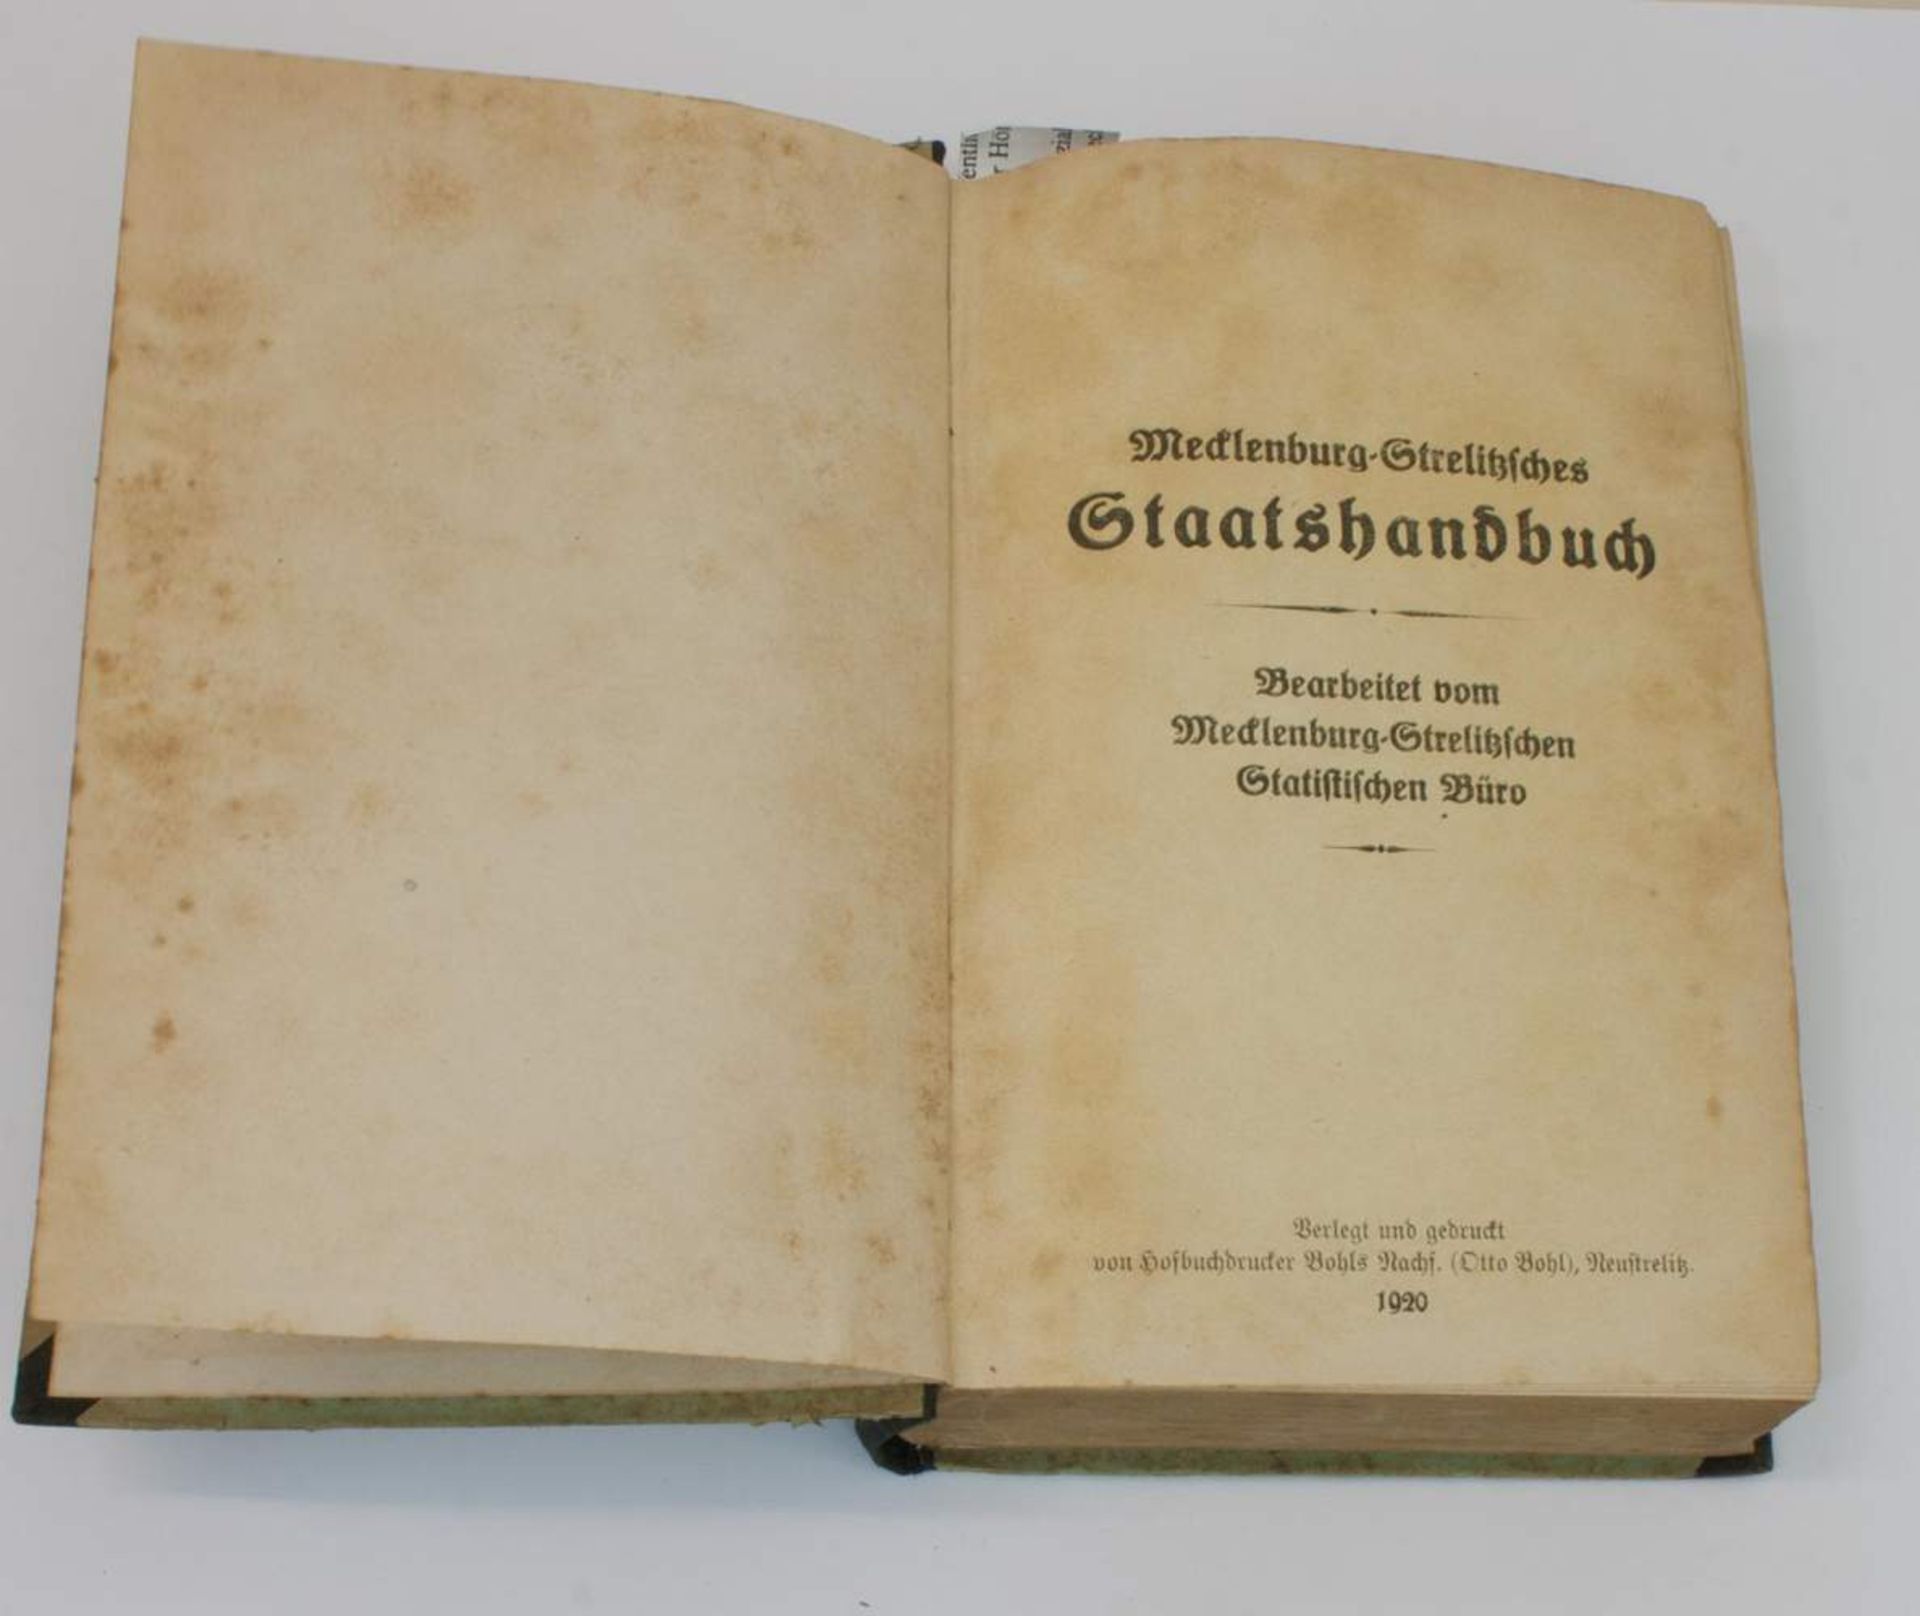 Staatshandbuch"Mecklenburg-Strelitzsches Staatshandbuch", Verlag der Hofbuchdruckerei Bohls/